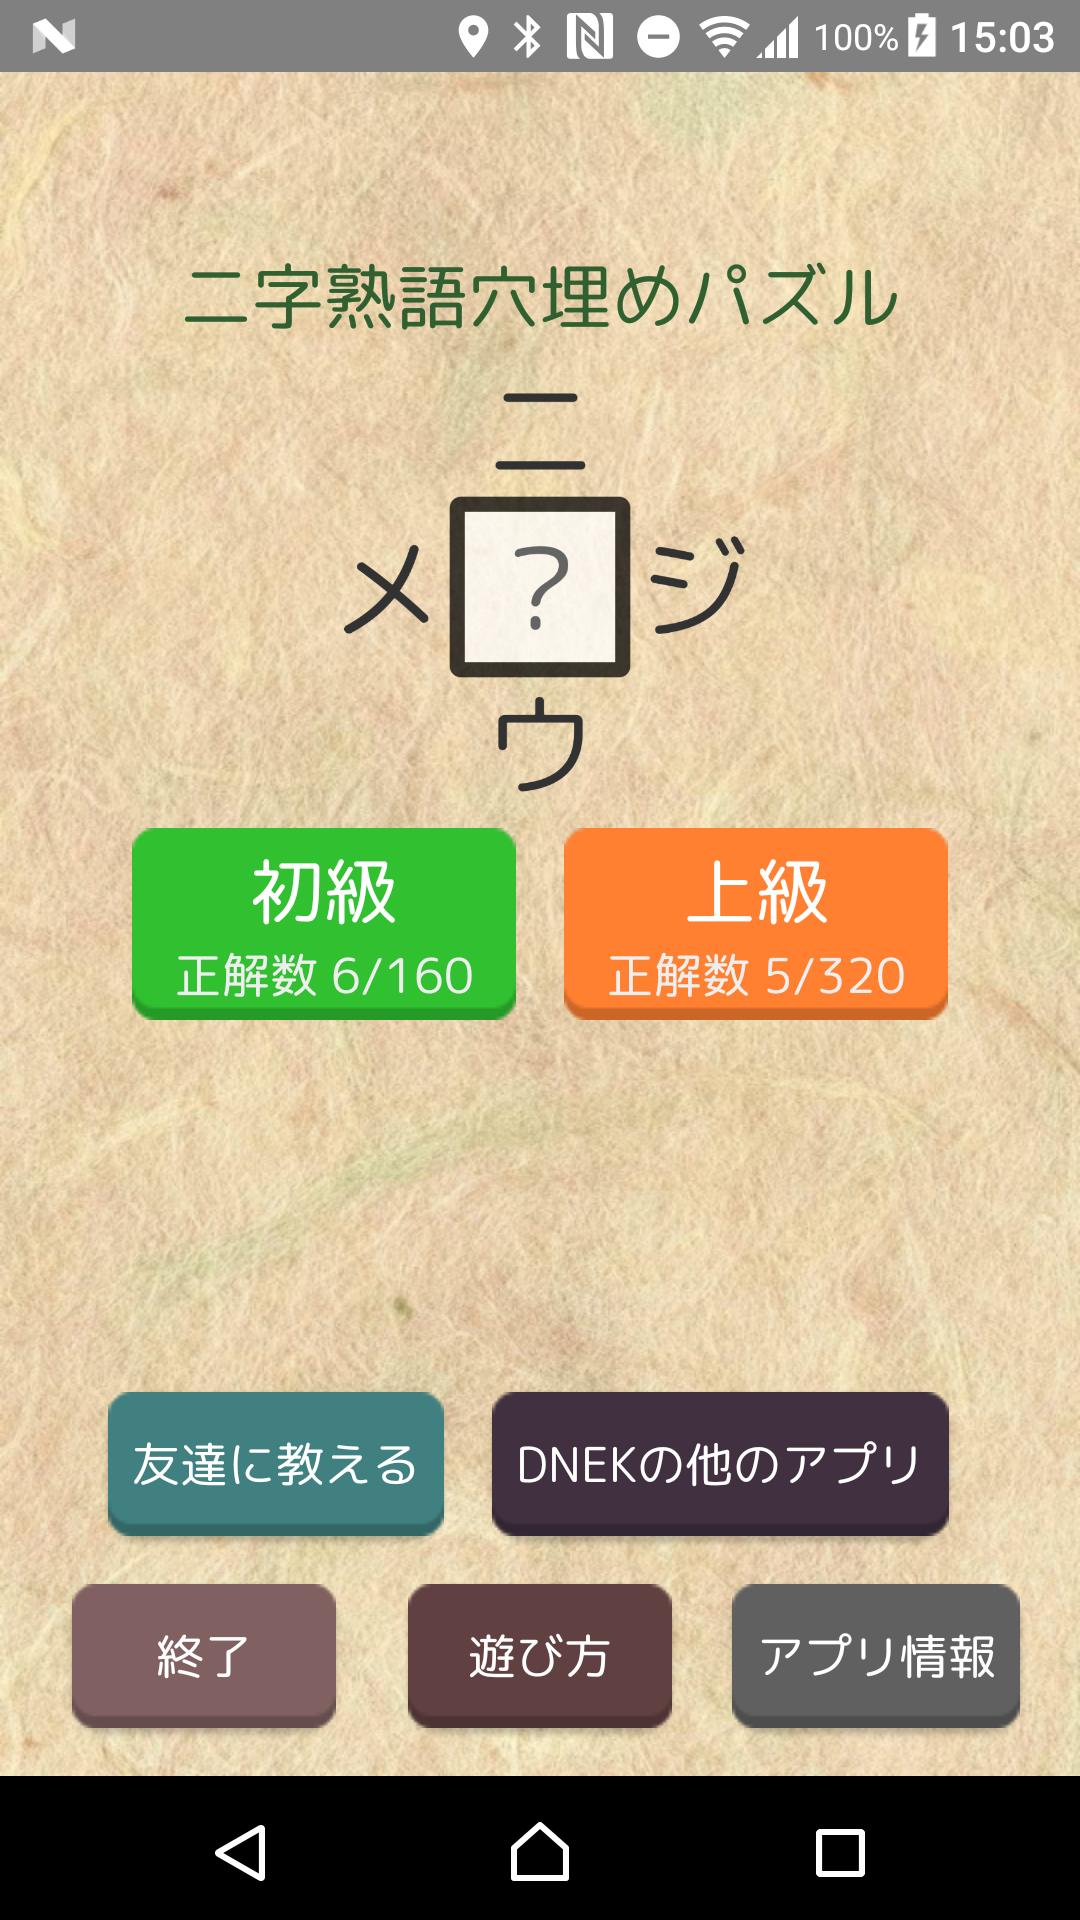 漢字パズル500問 二字熟語穴埋めパズル ニジウメ For Android Apk Download